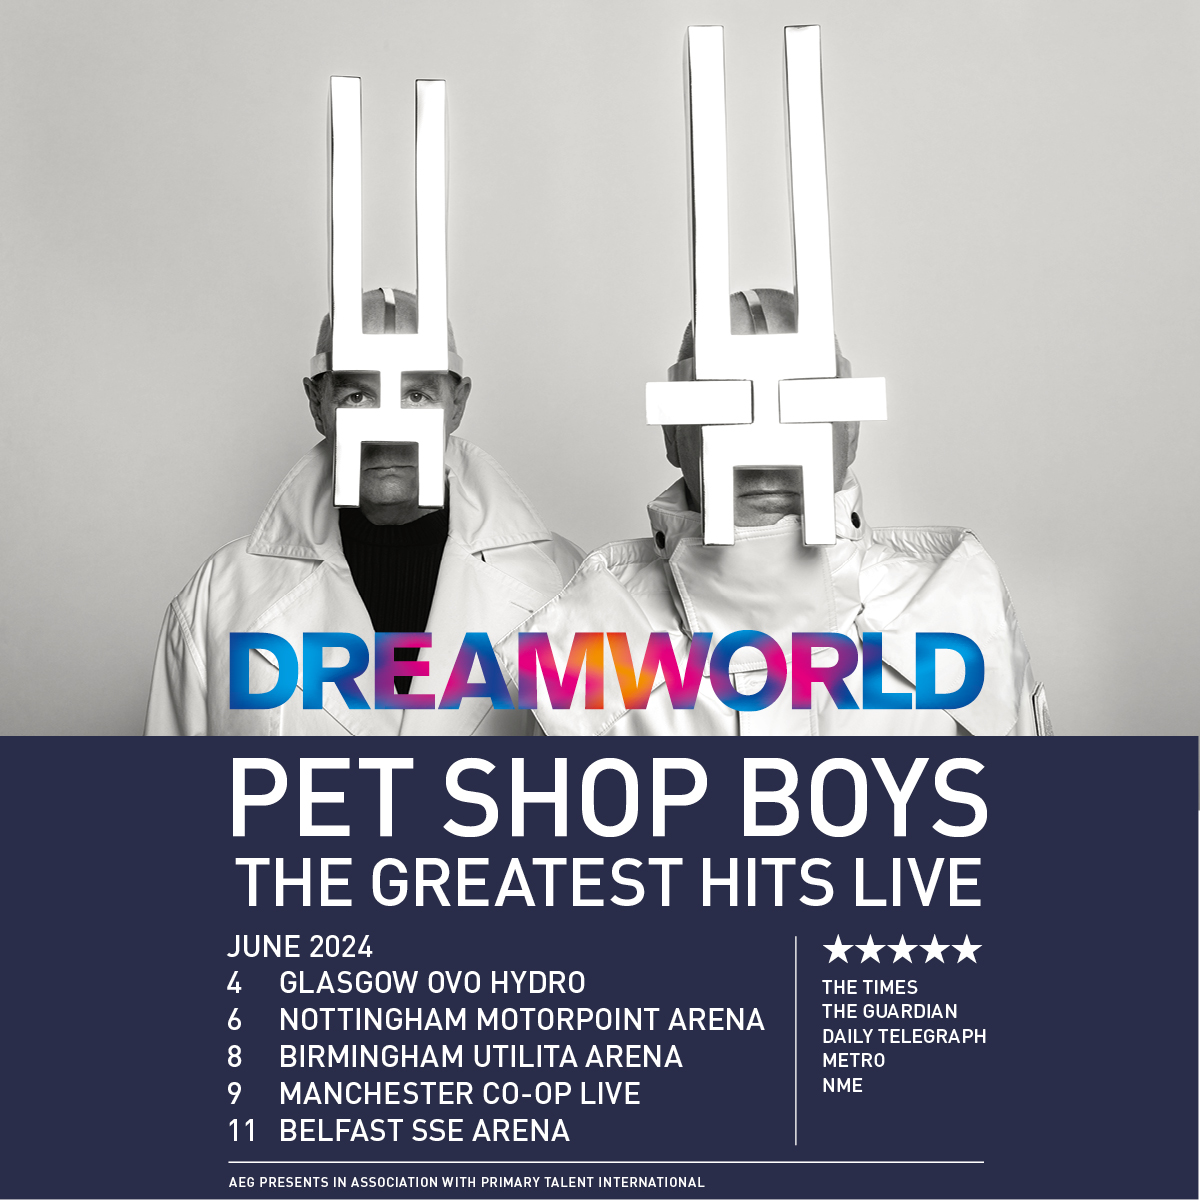 PET SHOP BOYS # Dreamworld - The Greatest Hits Live Tour / West